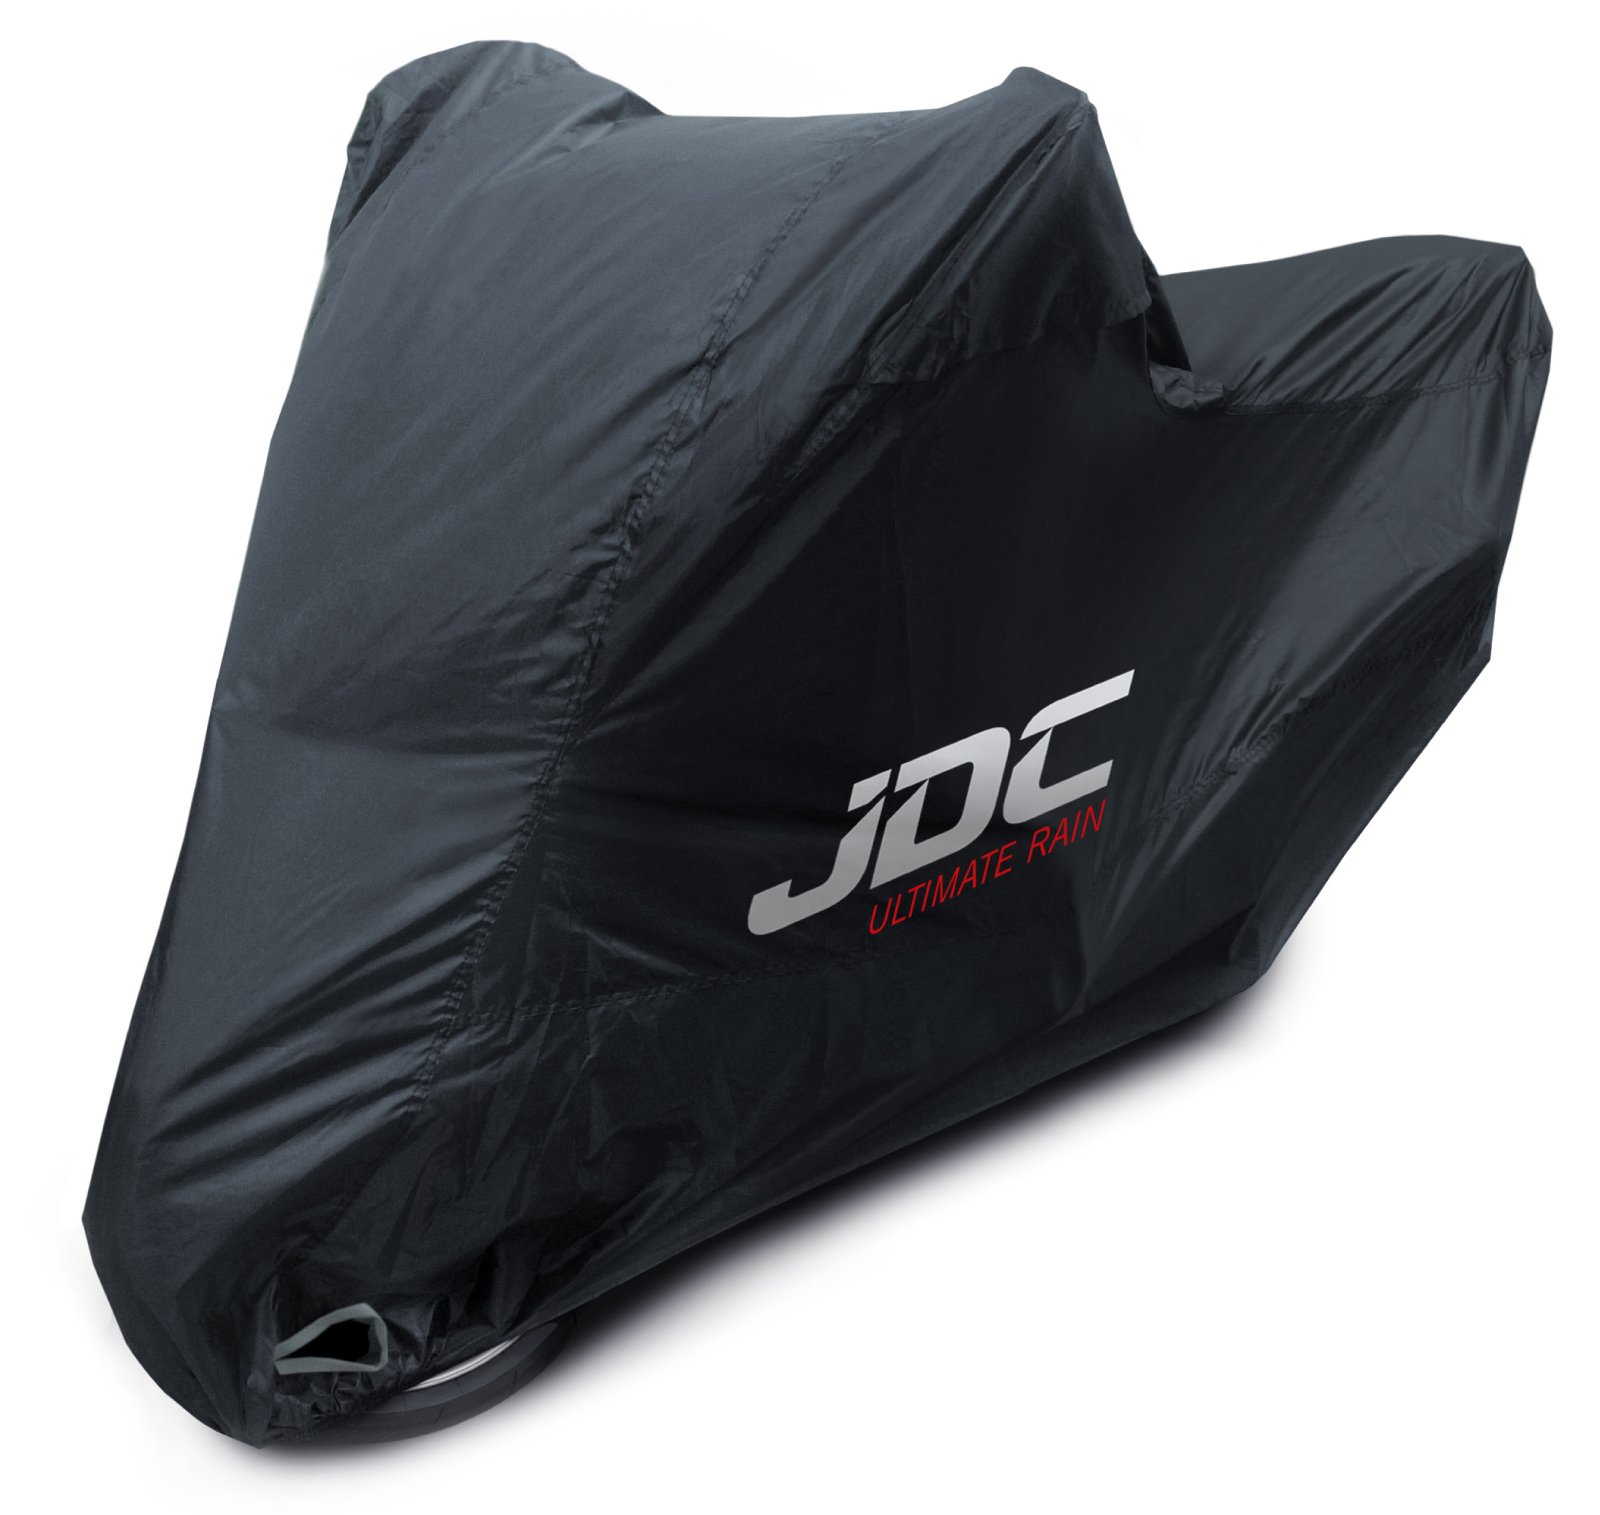 JDC 100% wasserdichte Motorradabdeckung – Ultimate RAIN (Strapazierfähig, weiches Futter, hitzebeständig, verschweißte Nähte) - XXL Top-Box von JDC